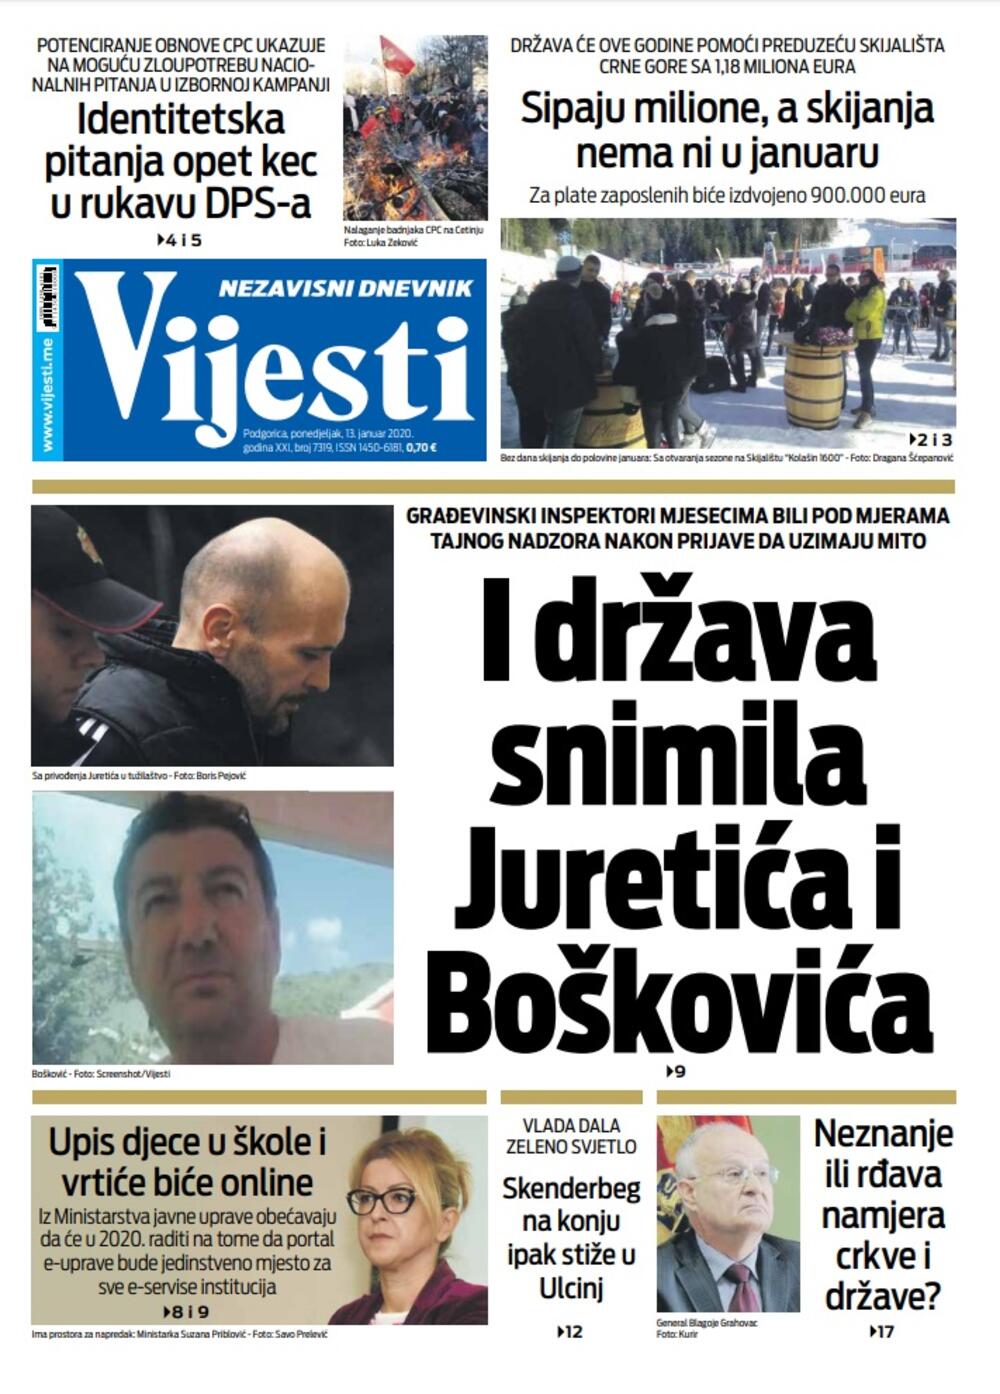 Naslovna strana "Vijesti" za 13. januar 2020. godine, Foto: Vijesti